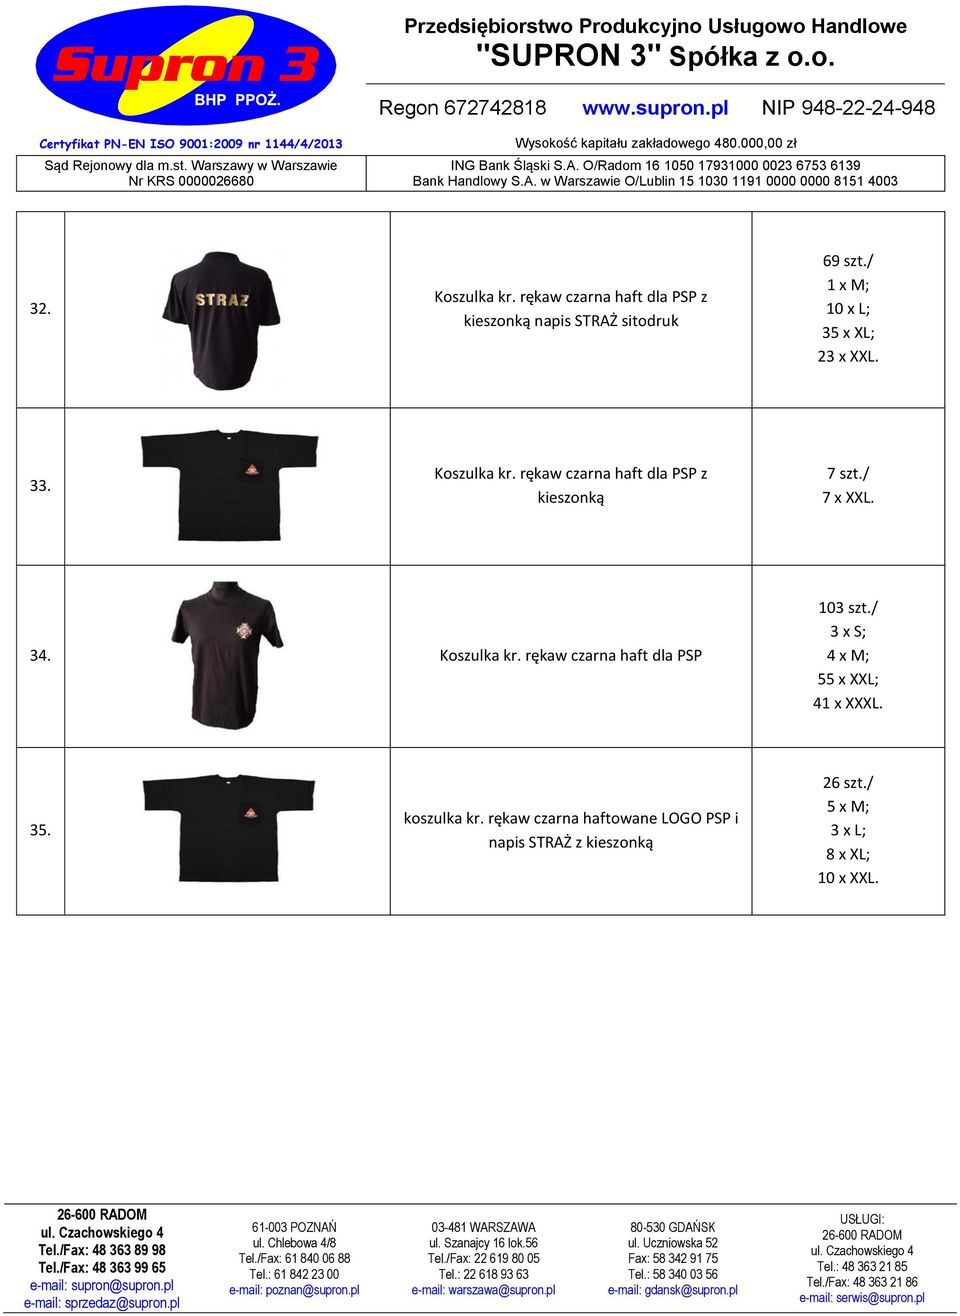 Koszulka kr rękaw czarna haft dla PSP 103 szt/ 3 x S; 4 x M; 55 x XXL; 41 x XXXL 35 koszulka